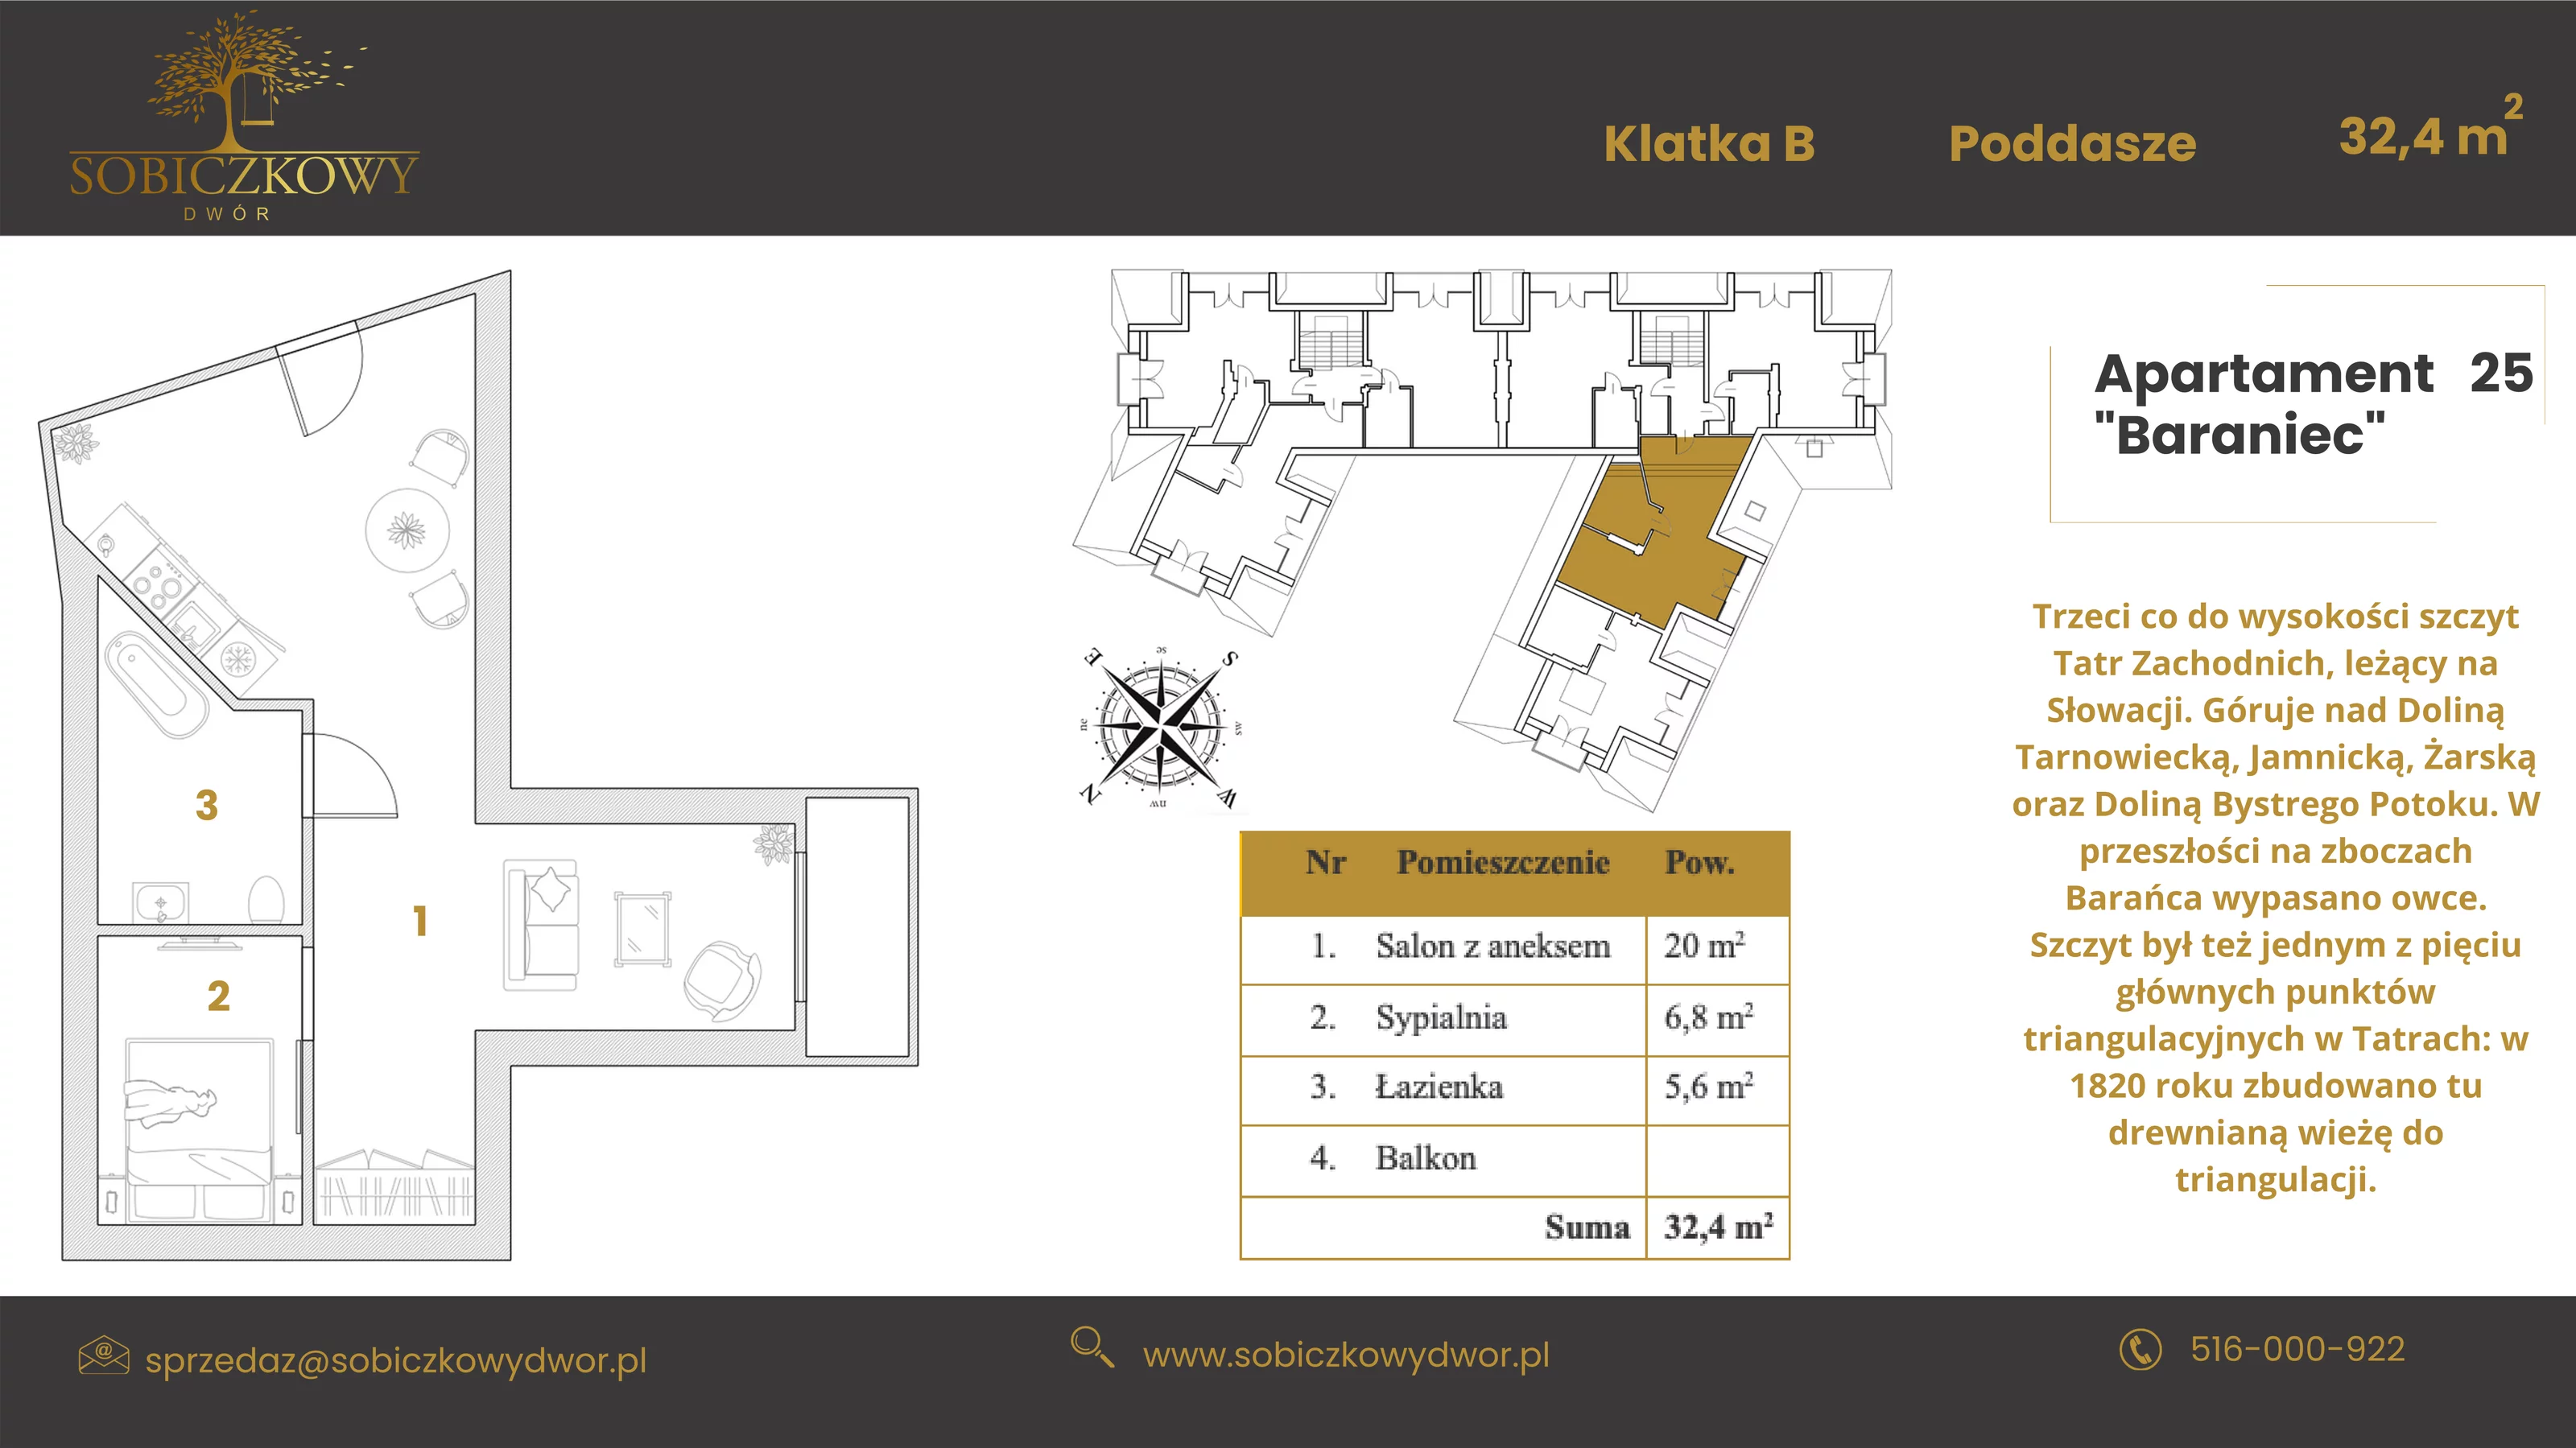 Apartament 46,10 m², piętro 2, oferta nr 25 "Baraniec", Sobiczkowy Dwór, Kościelisko, ul. Sobiczkowa Bór 1